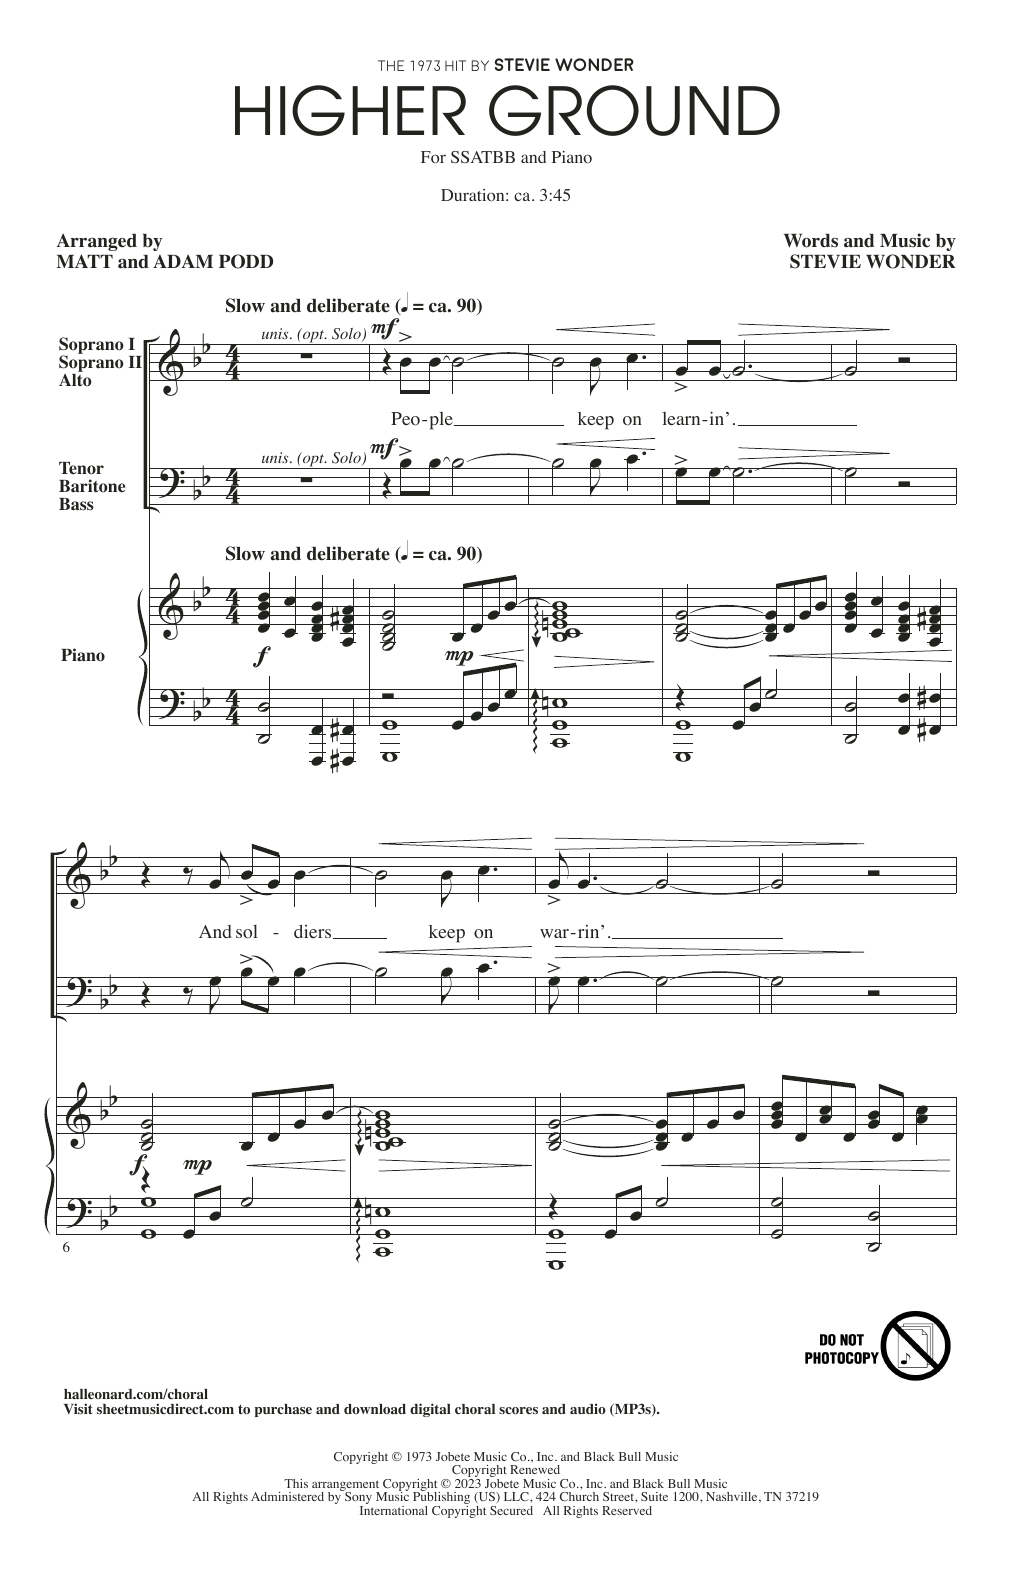 Stevie Wonder Higher Ground (arr. Matt and Adam Podd) Sheet Music Notes & Chords for SSATBB Choir - Download or Print PDF